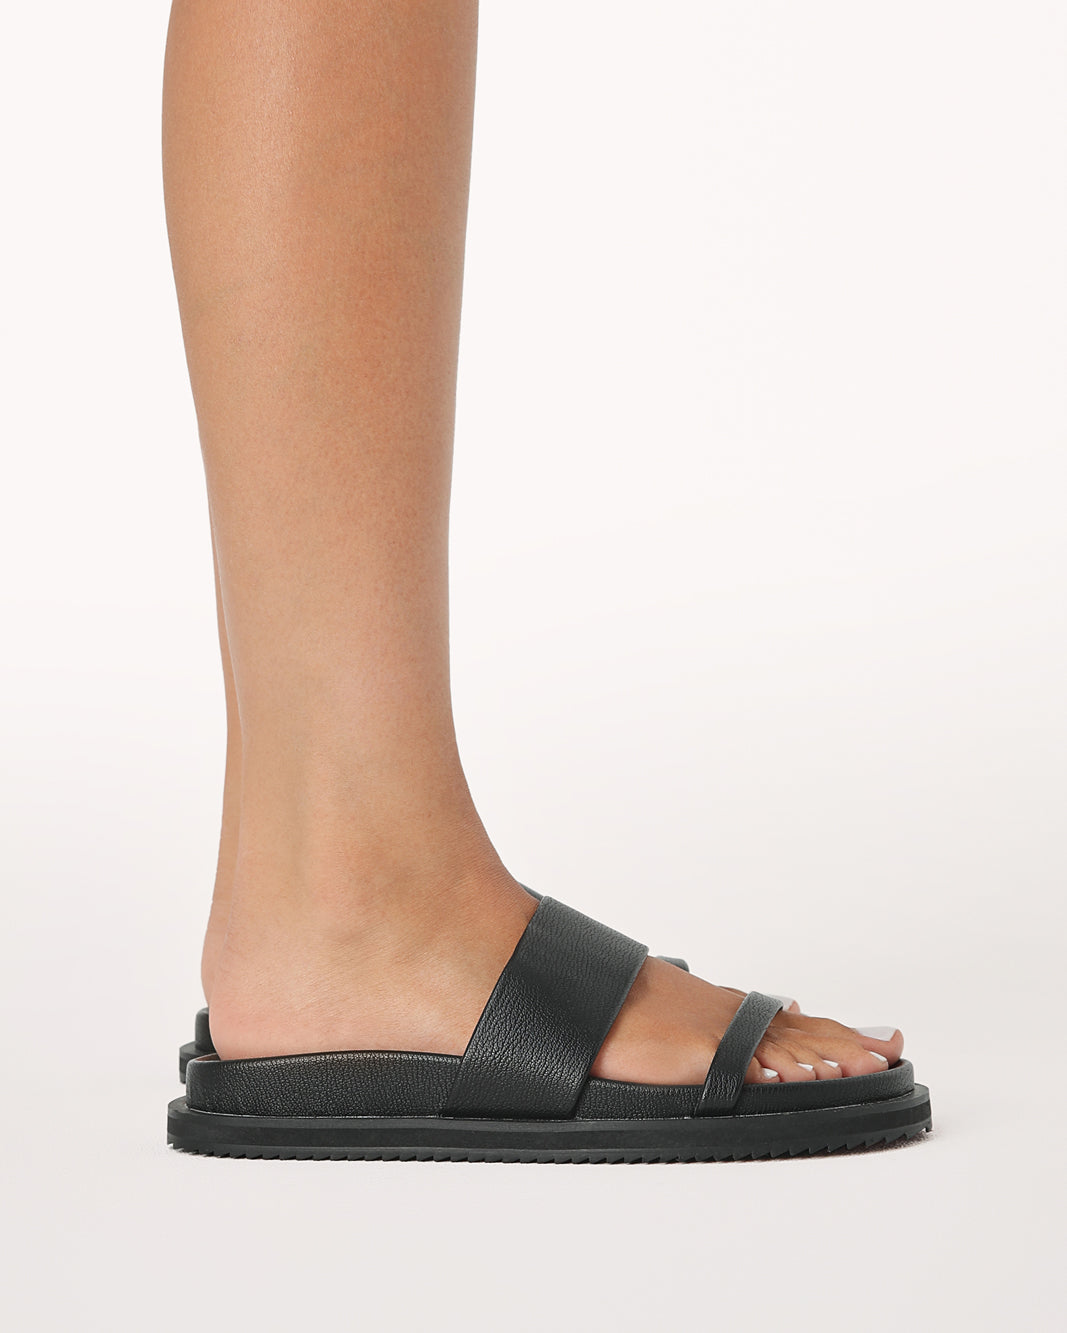 TAMIA - BLACK-Sandals-Billini-BILLINI USA